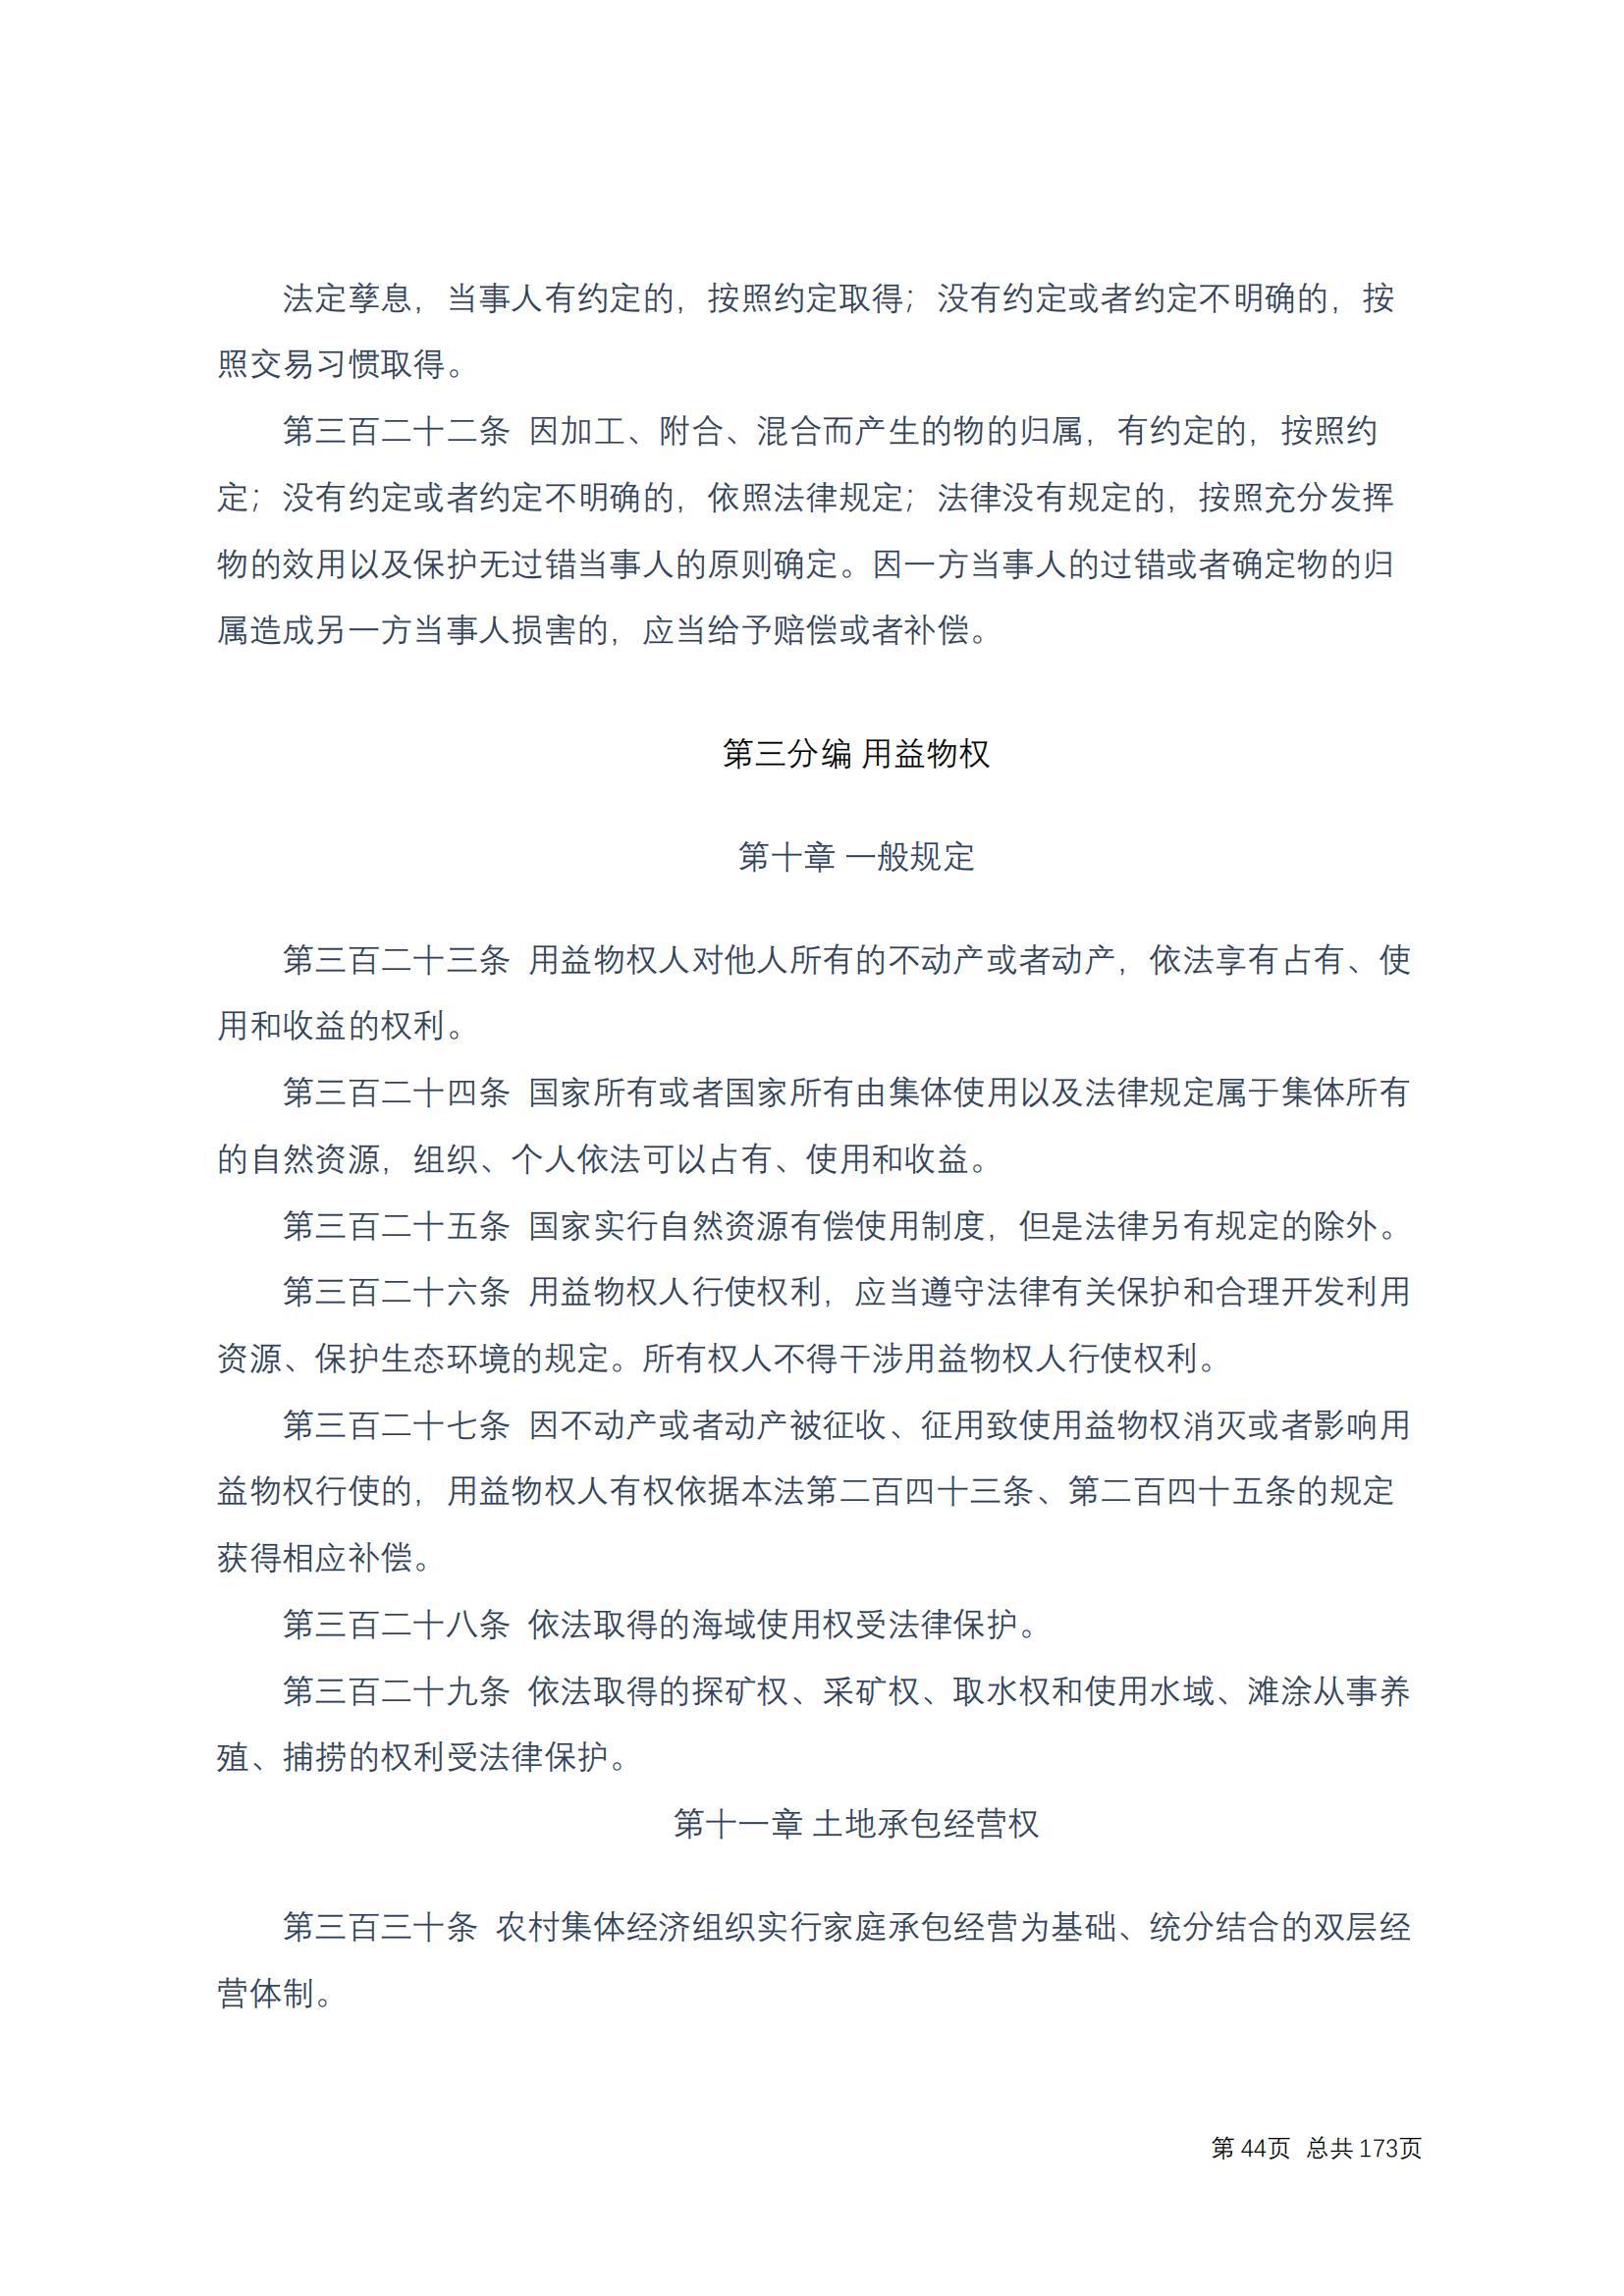 中华人民共和国民法典 修改过_43